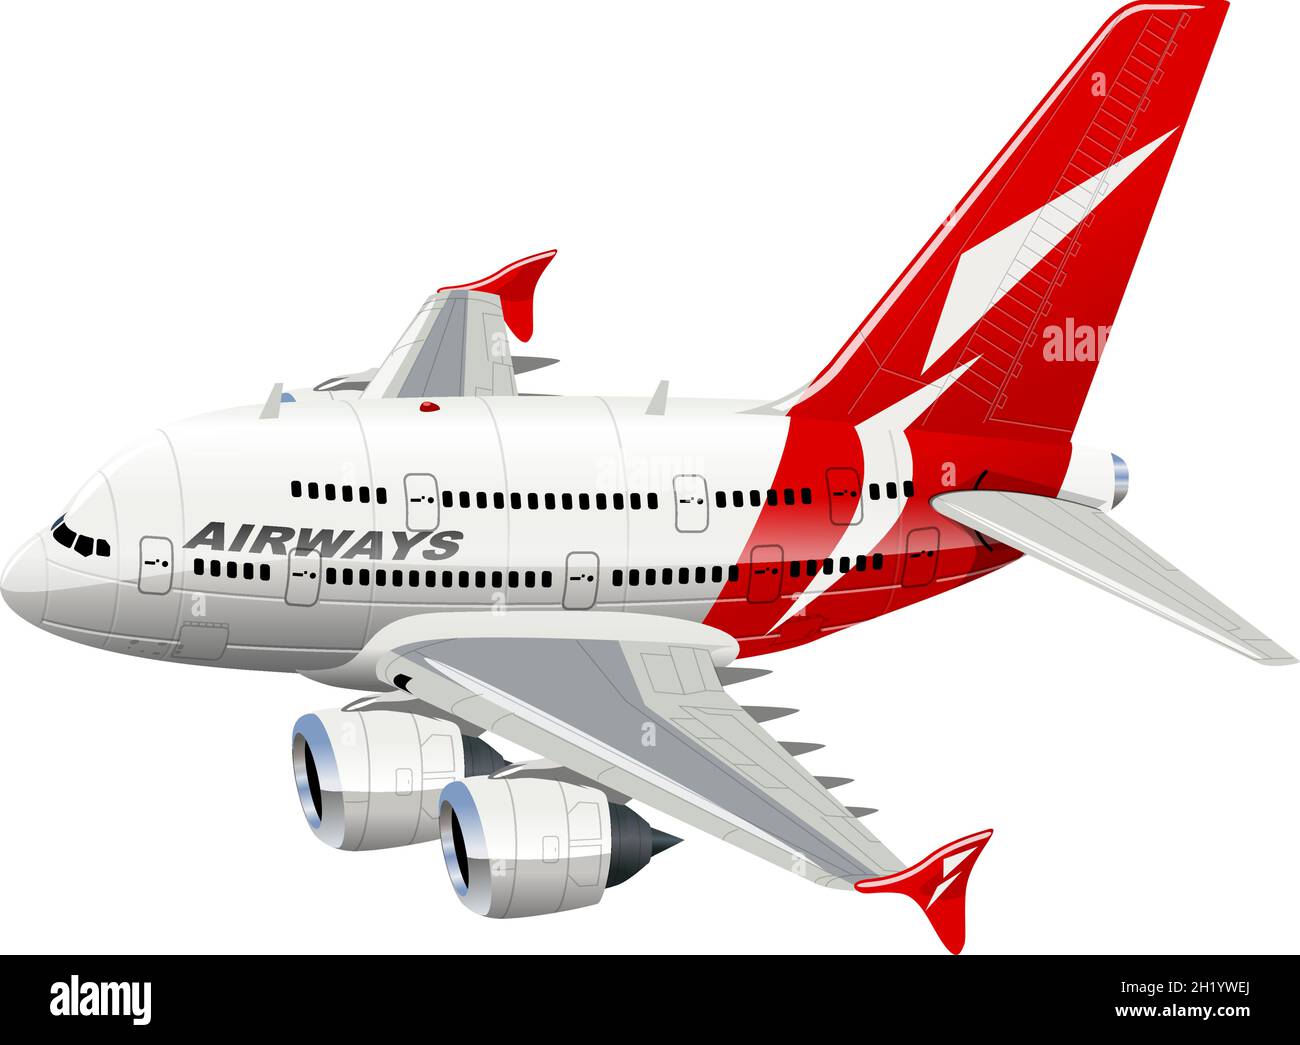 Vektorgrafik Cartoon Commercial Airplane. Verfügbares EPS-10-Vektorformat, das durch Gruppen getrennt ist, für eine einfache Bearbeitung Stock Vektor